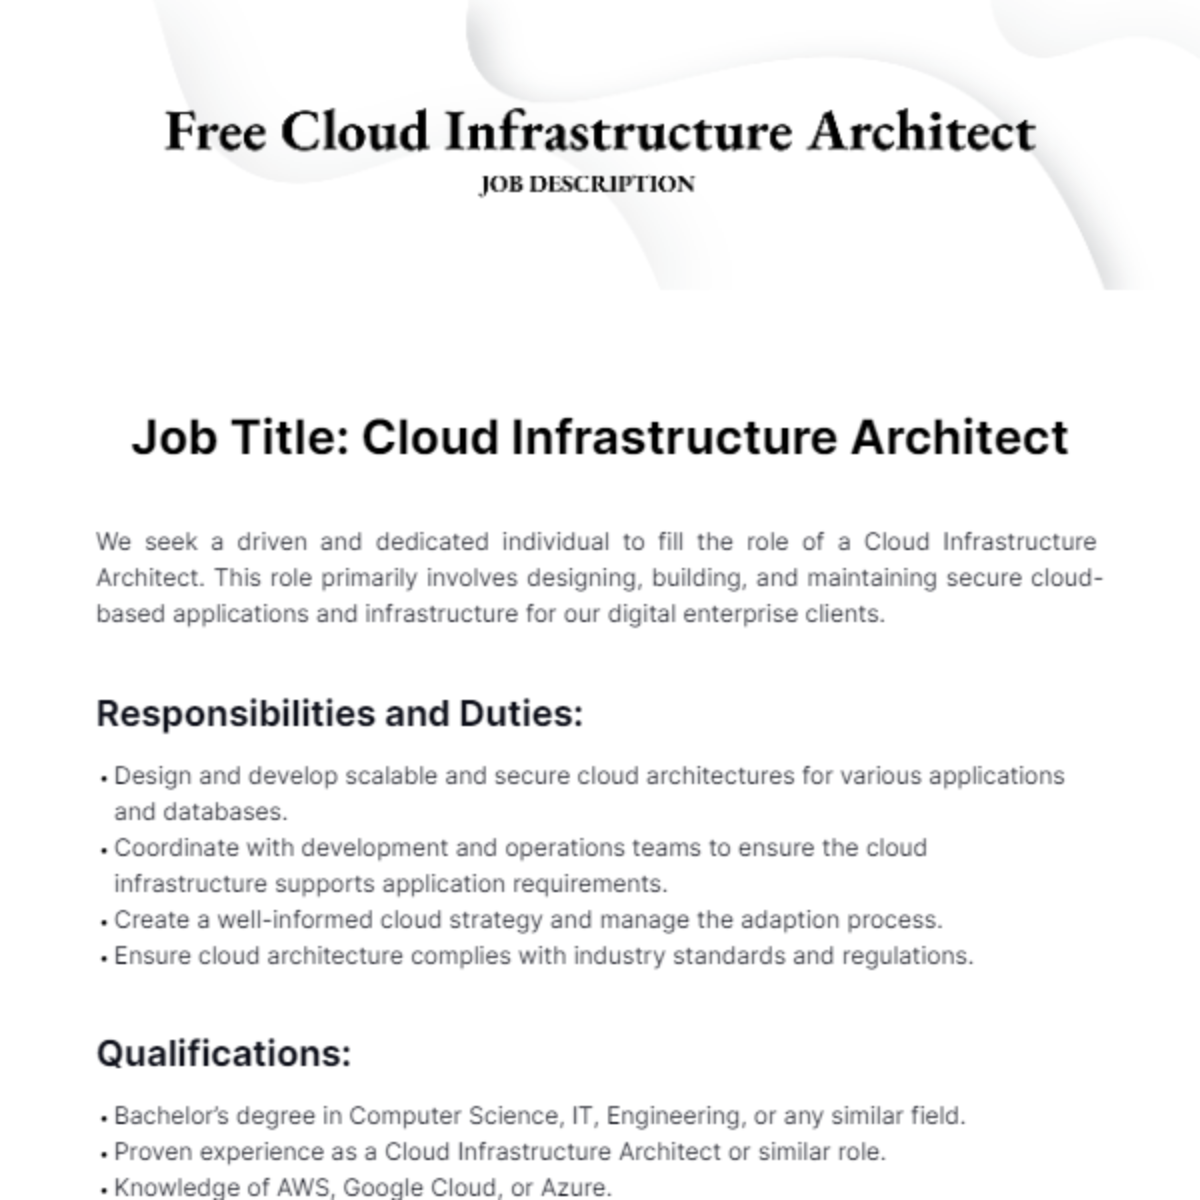 Cloud Infrastructure Architect Job Description Template